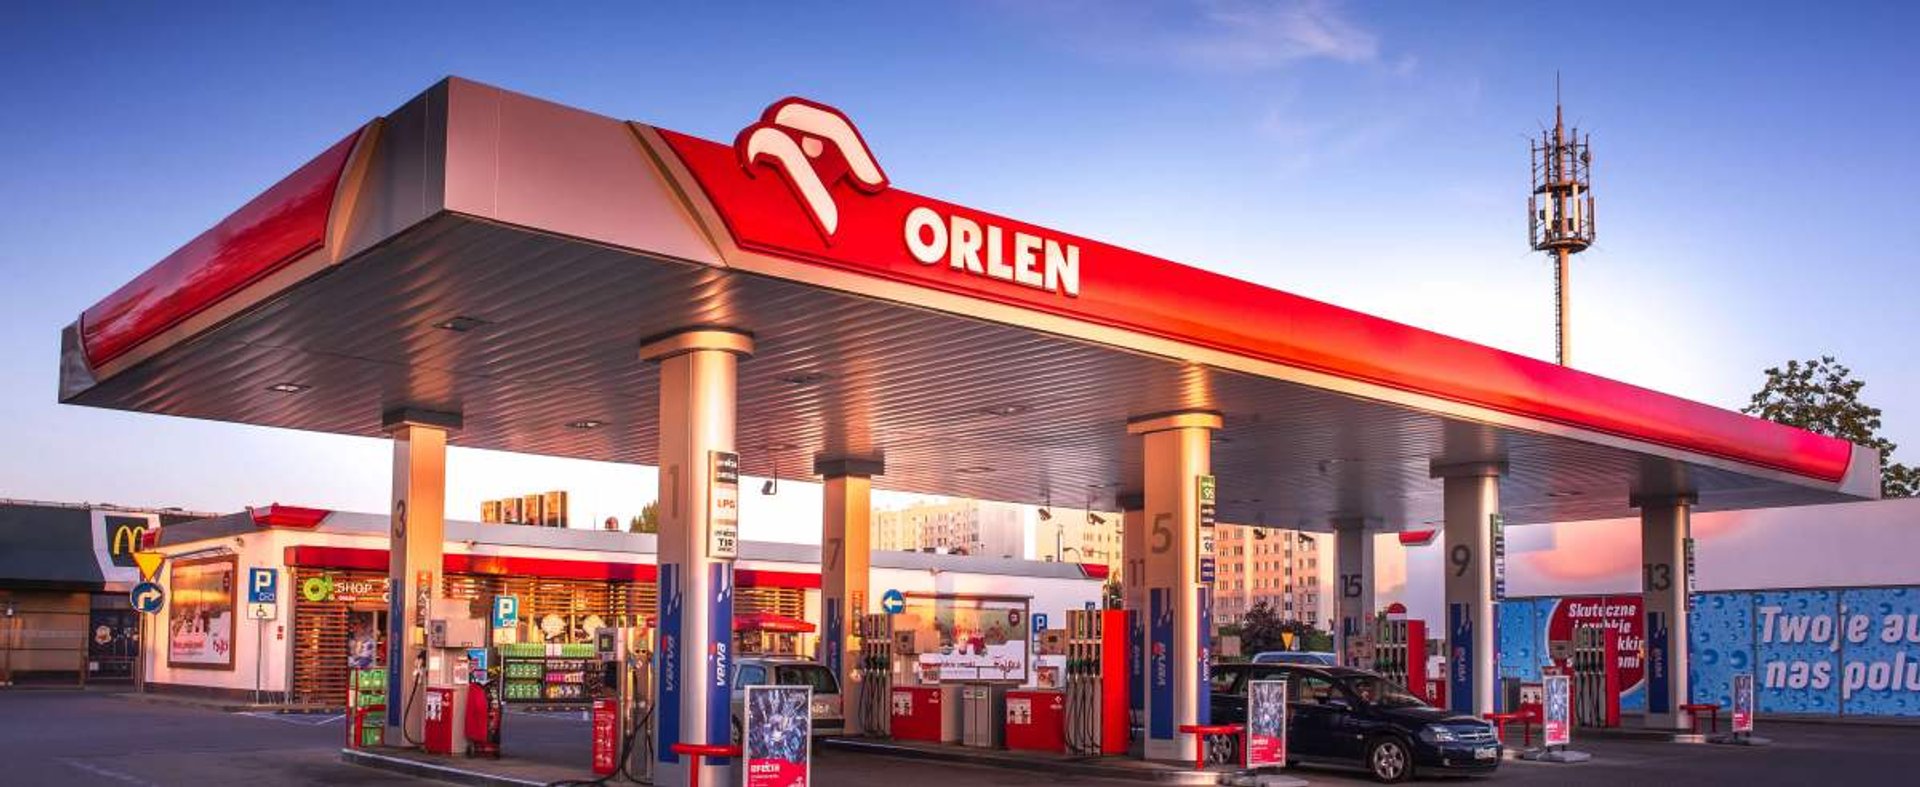 Stacja benzynowa Orlen